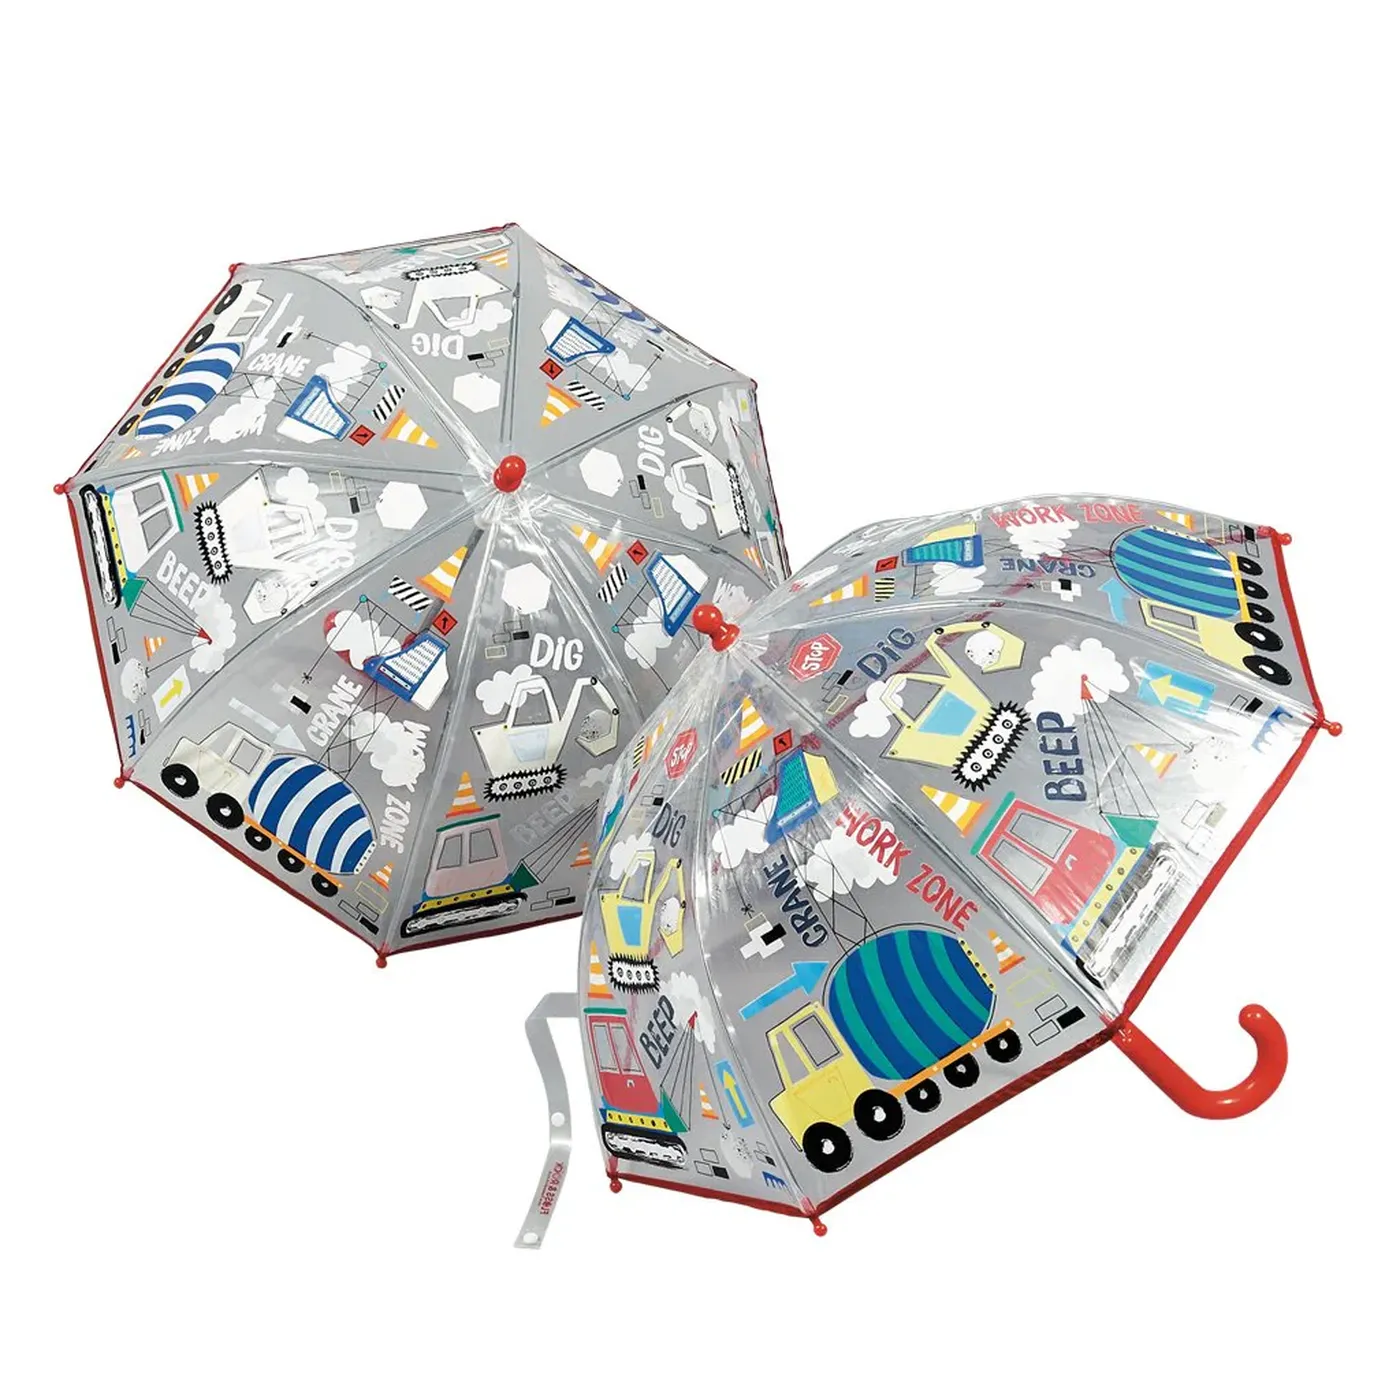 Umbrela pentru copii, in culori schimbatoare Construction, 3 ani+, Floss & Rock